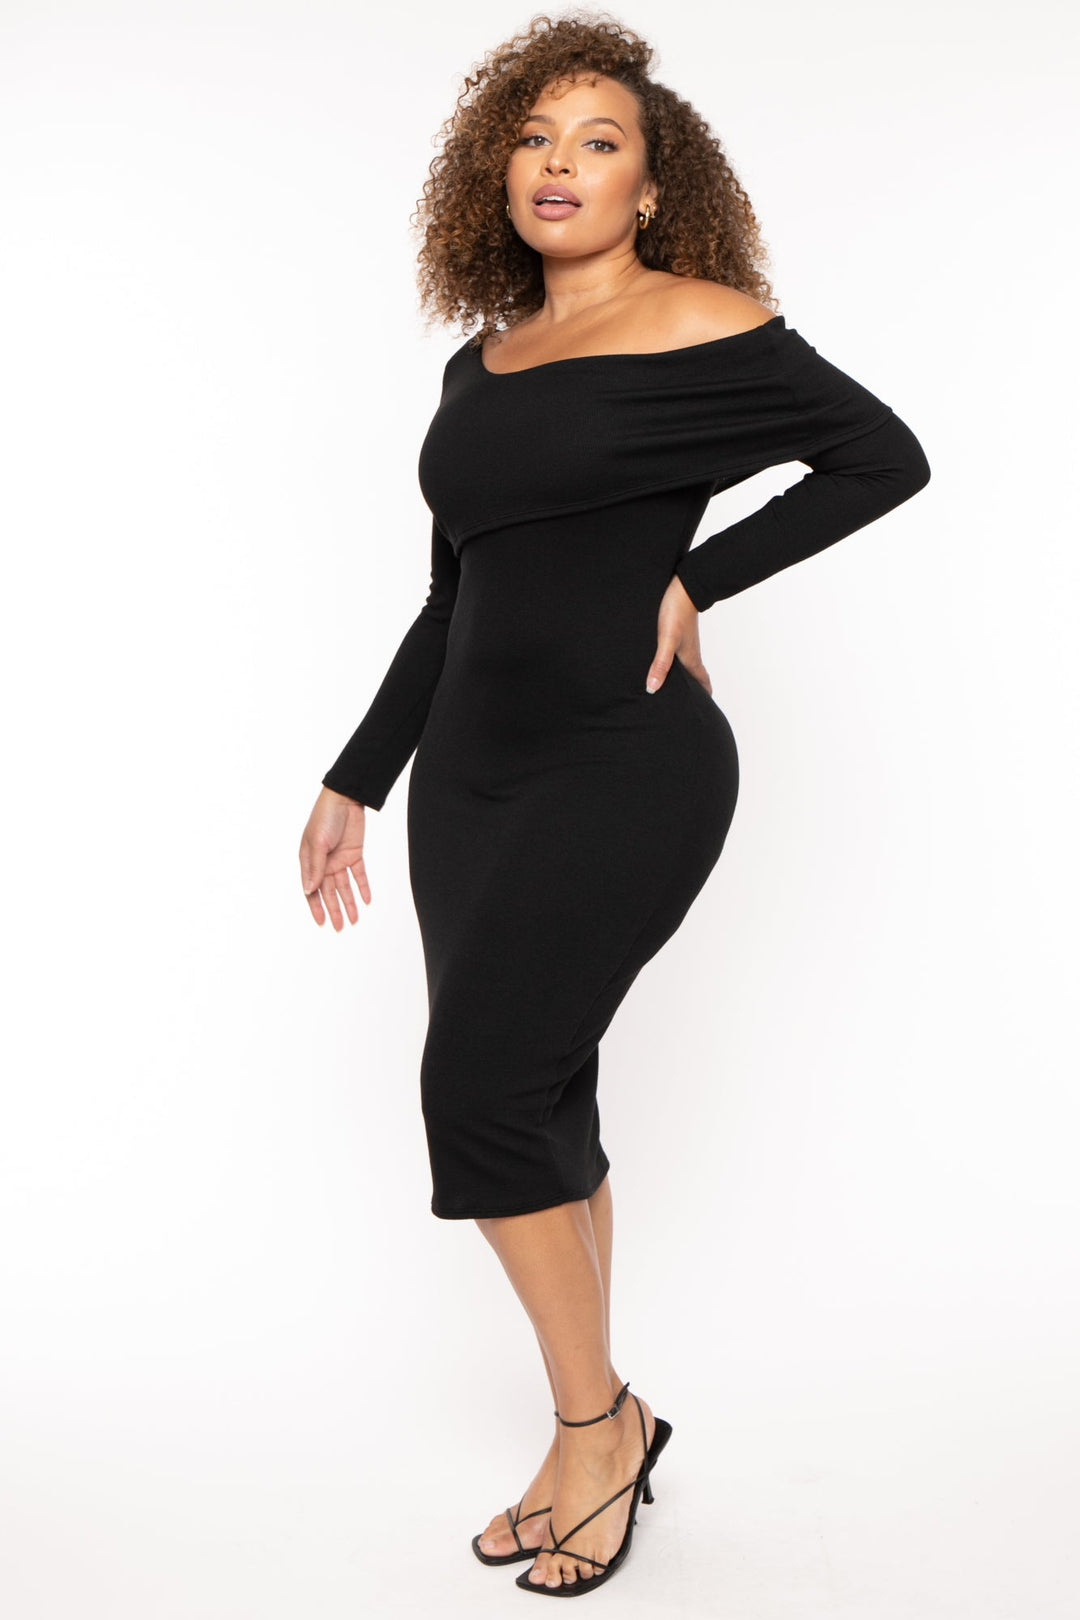 Curvy Sense Dresses Plus Size Cerise One Shoulder Dress- Black